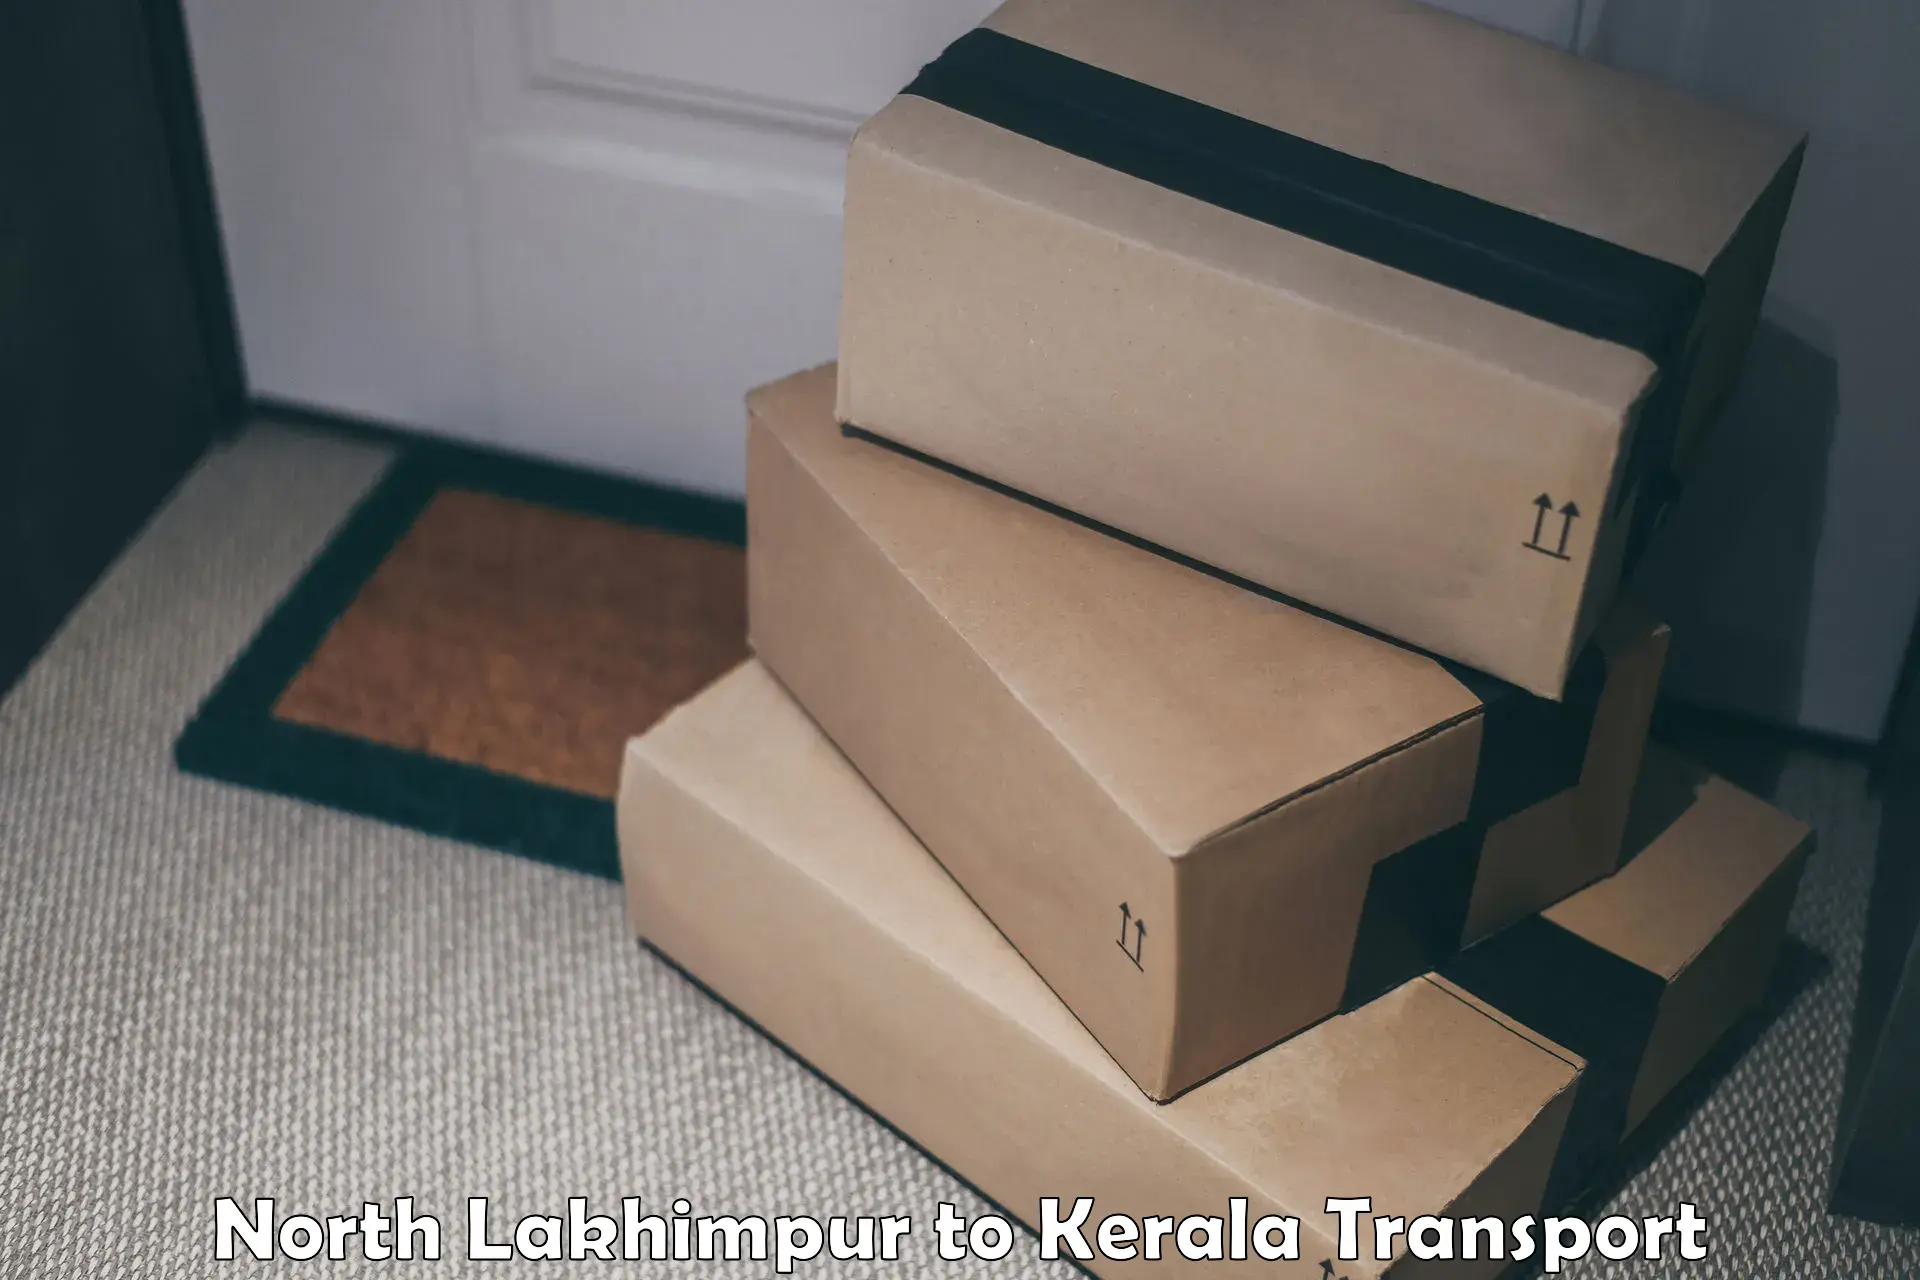 Interstate goods transport in North Lakhimpur to Kerala